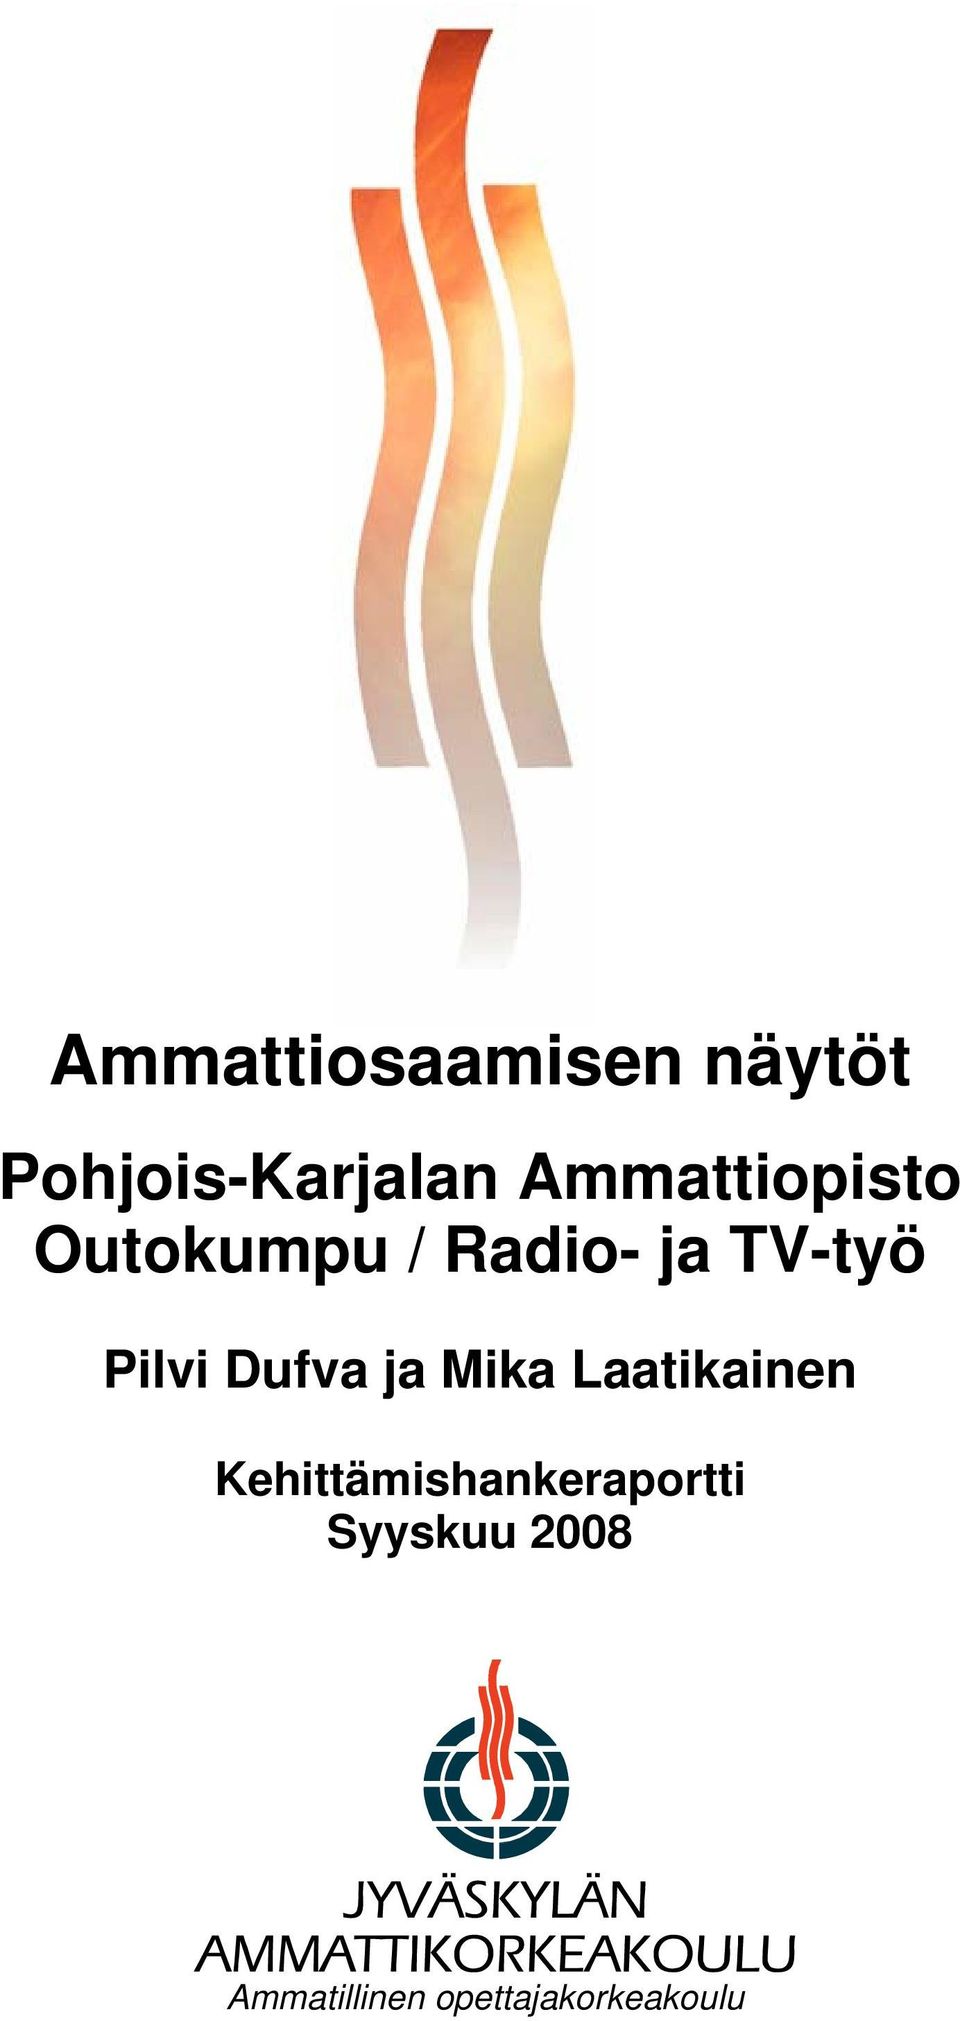 Pilvi Dufva ja Mika Laatikainen